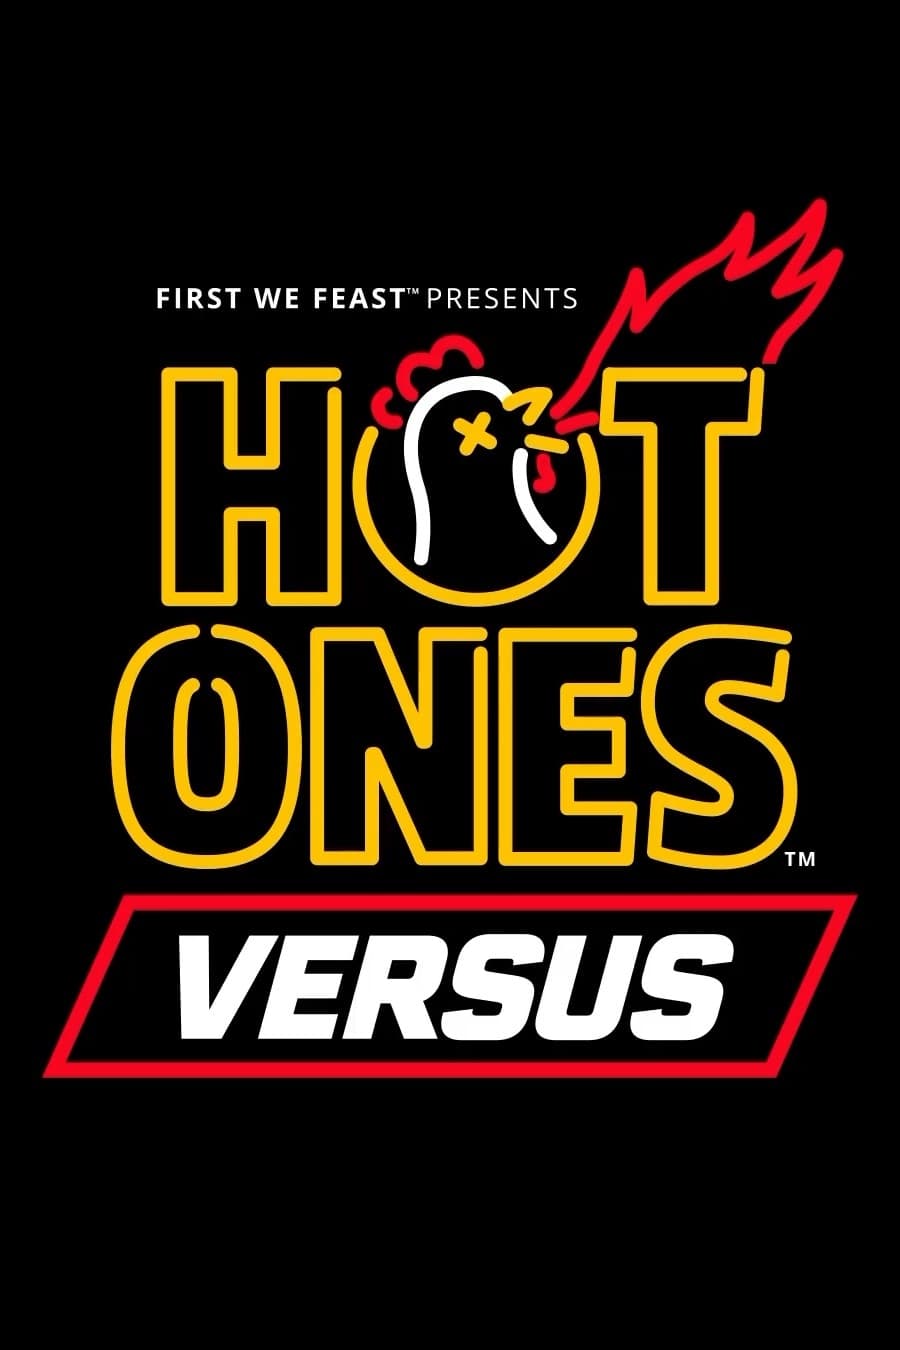 Hot Ones Versus